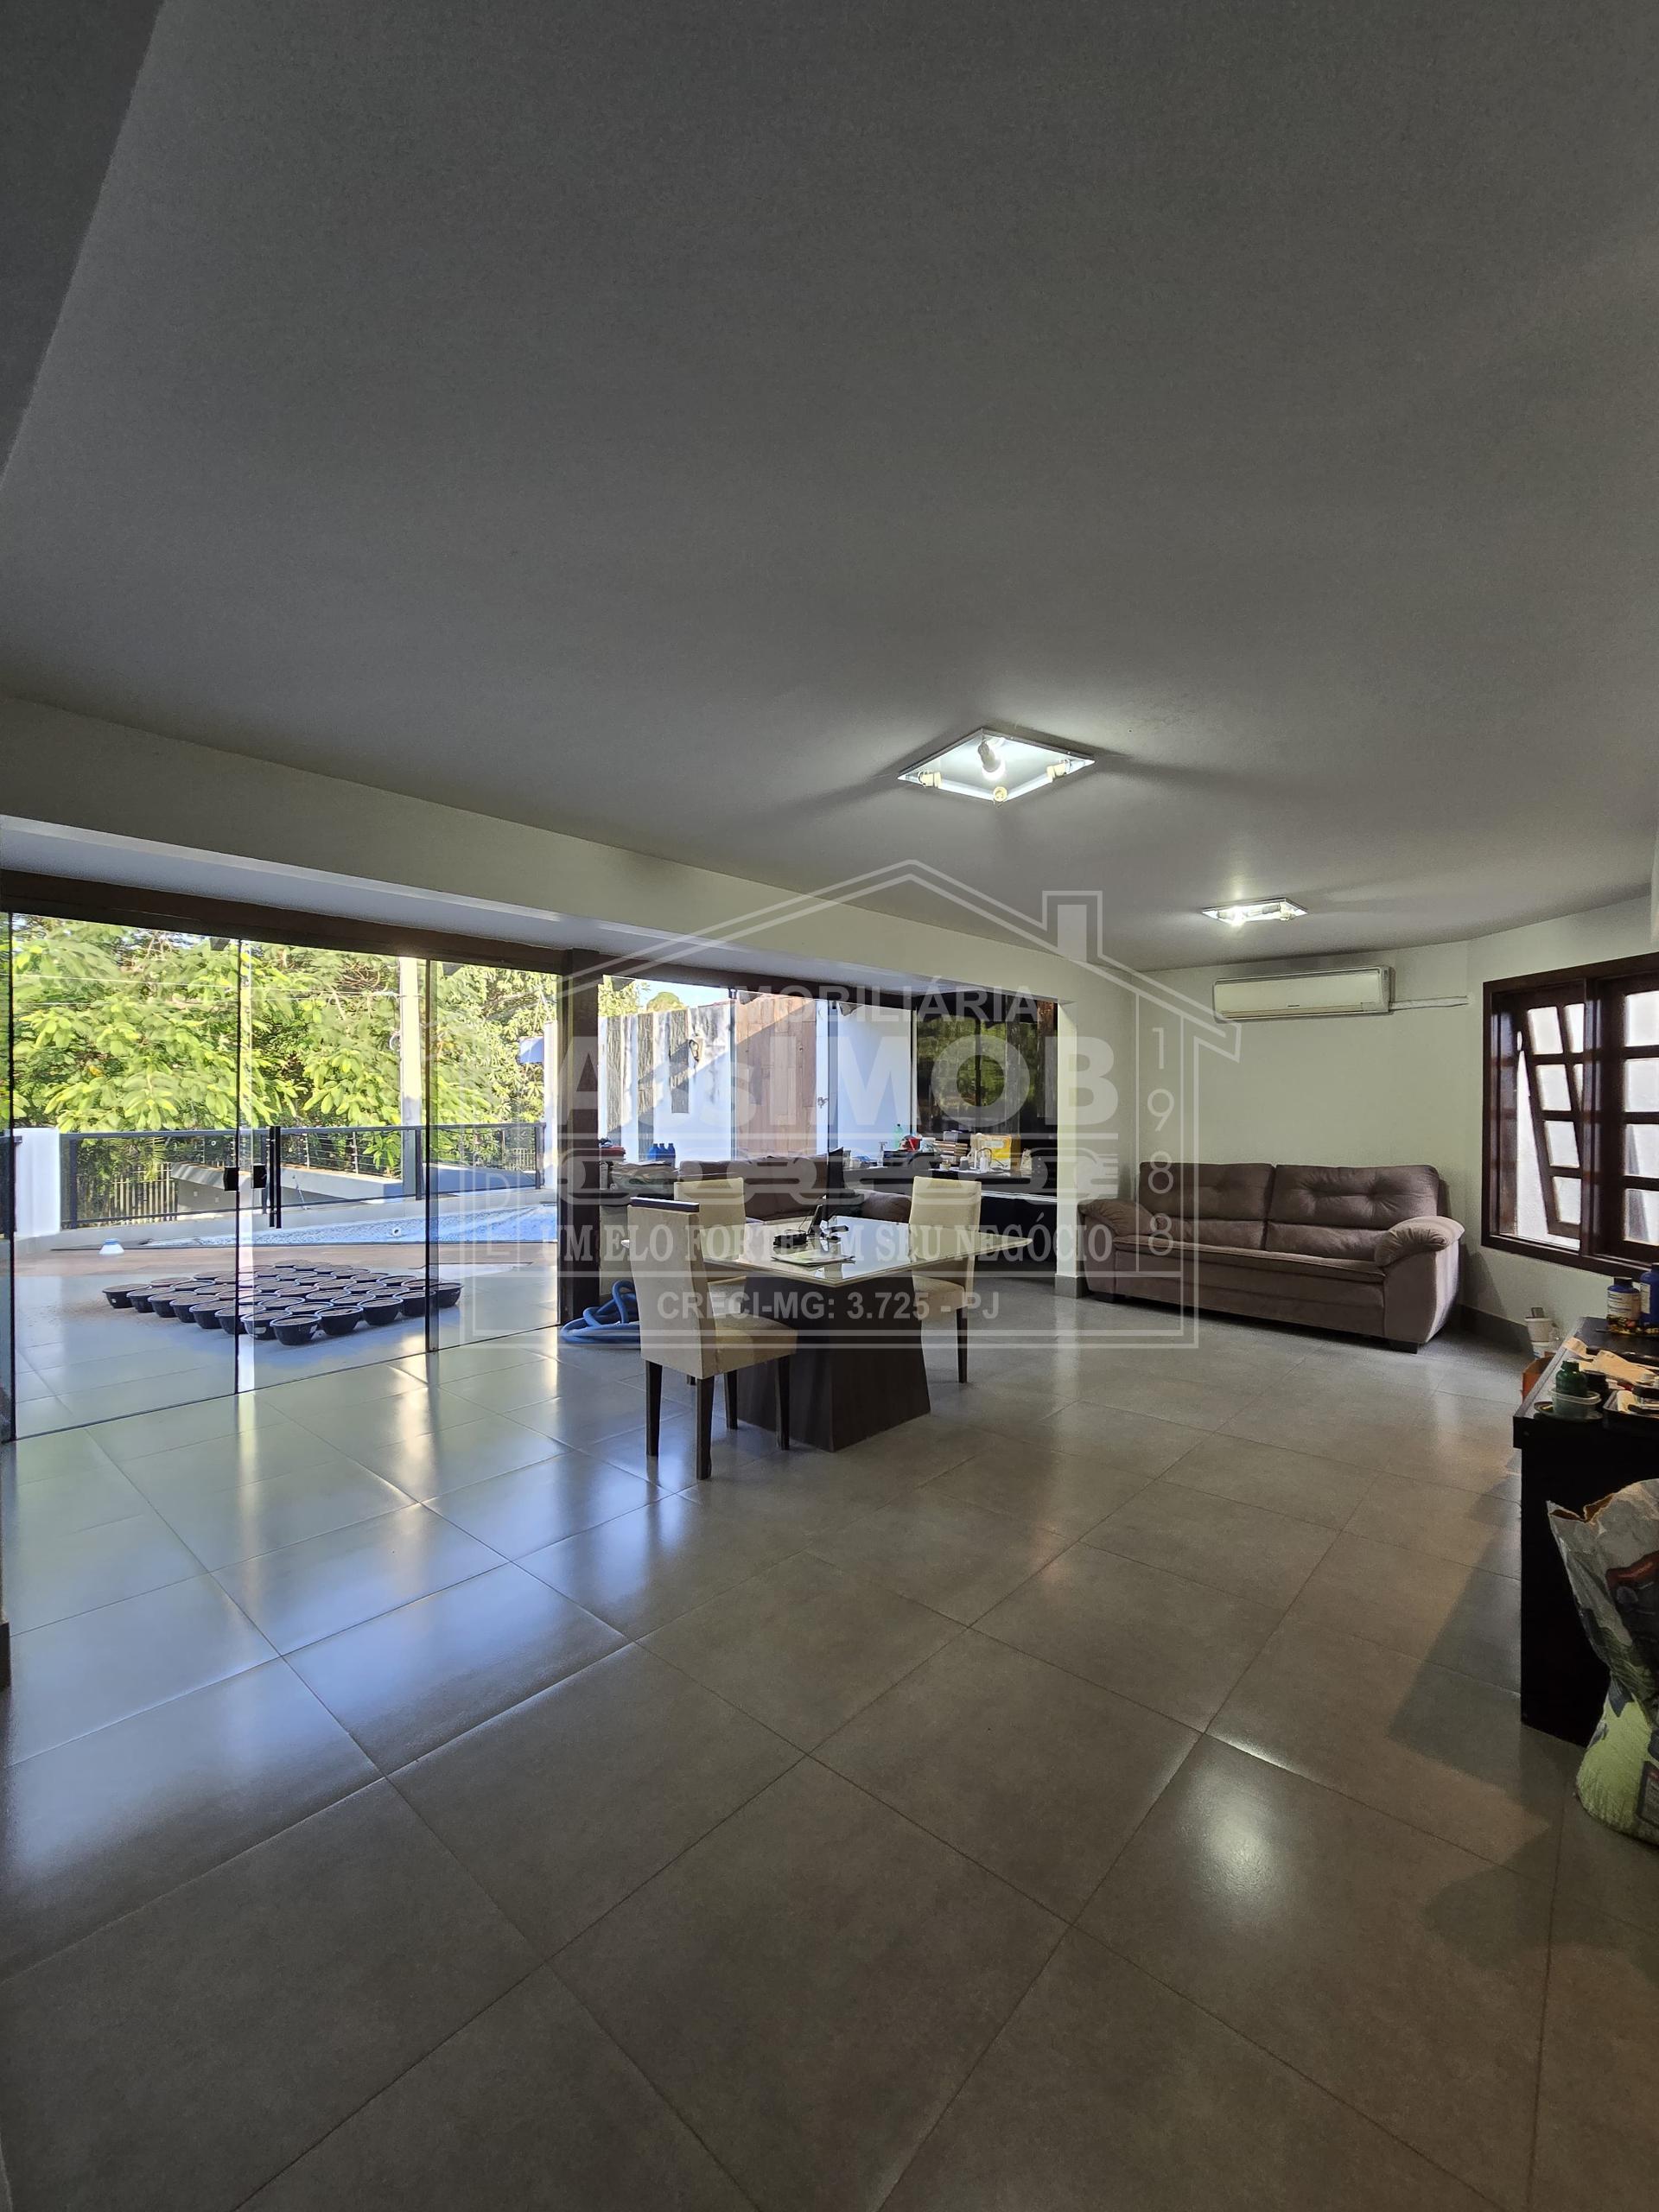 Casa sobrado para venda, com piscina, Centro, PARACATU- MG